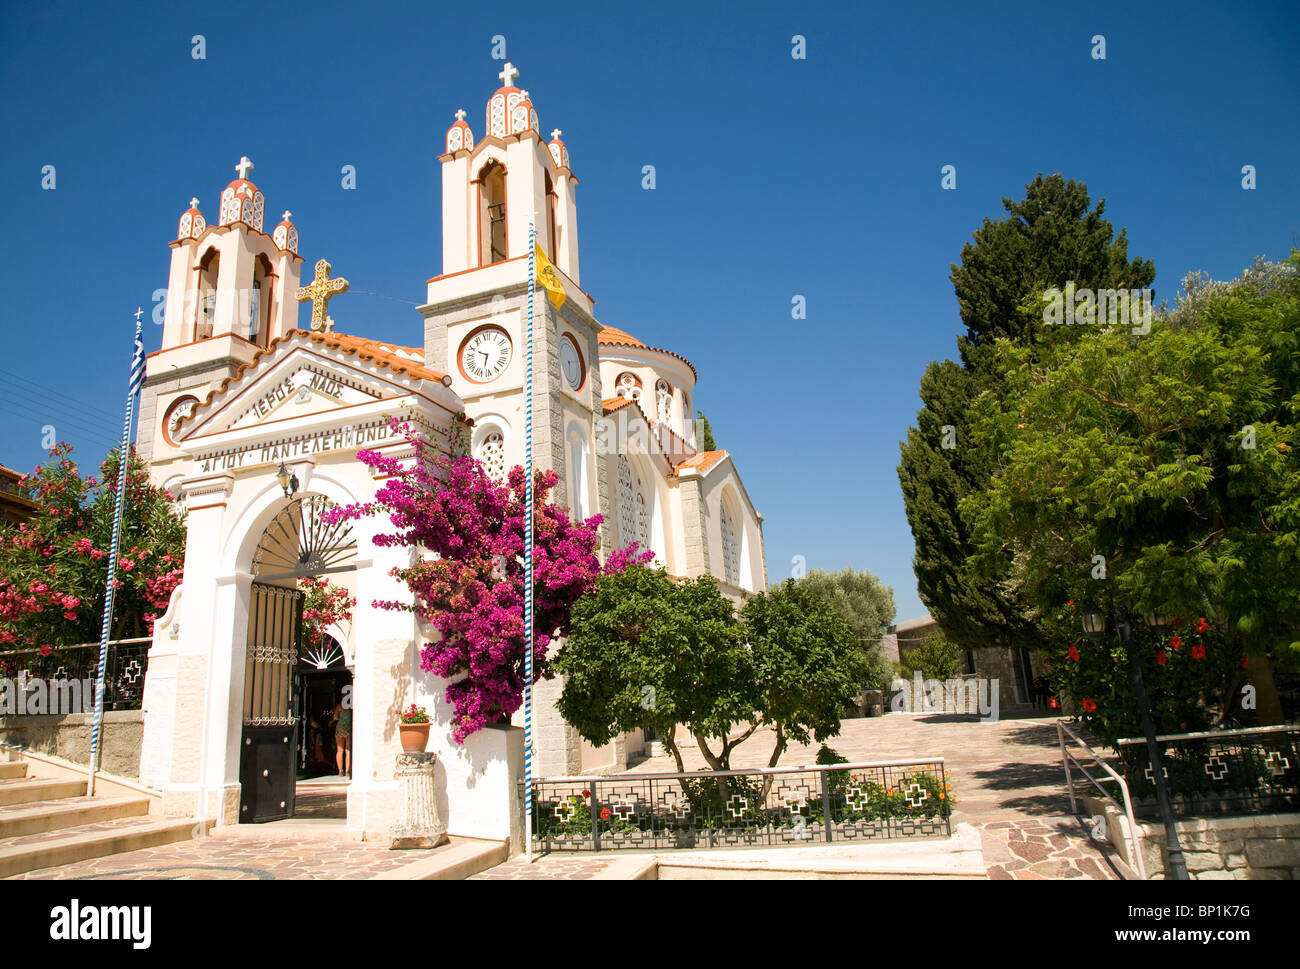 Eglise grecque orthodoxe d'Agios Pandeliemon, Siana, Rhodes, Grèce Banque D'Images